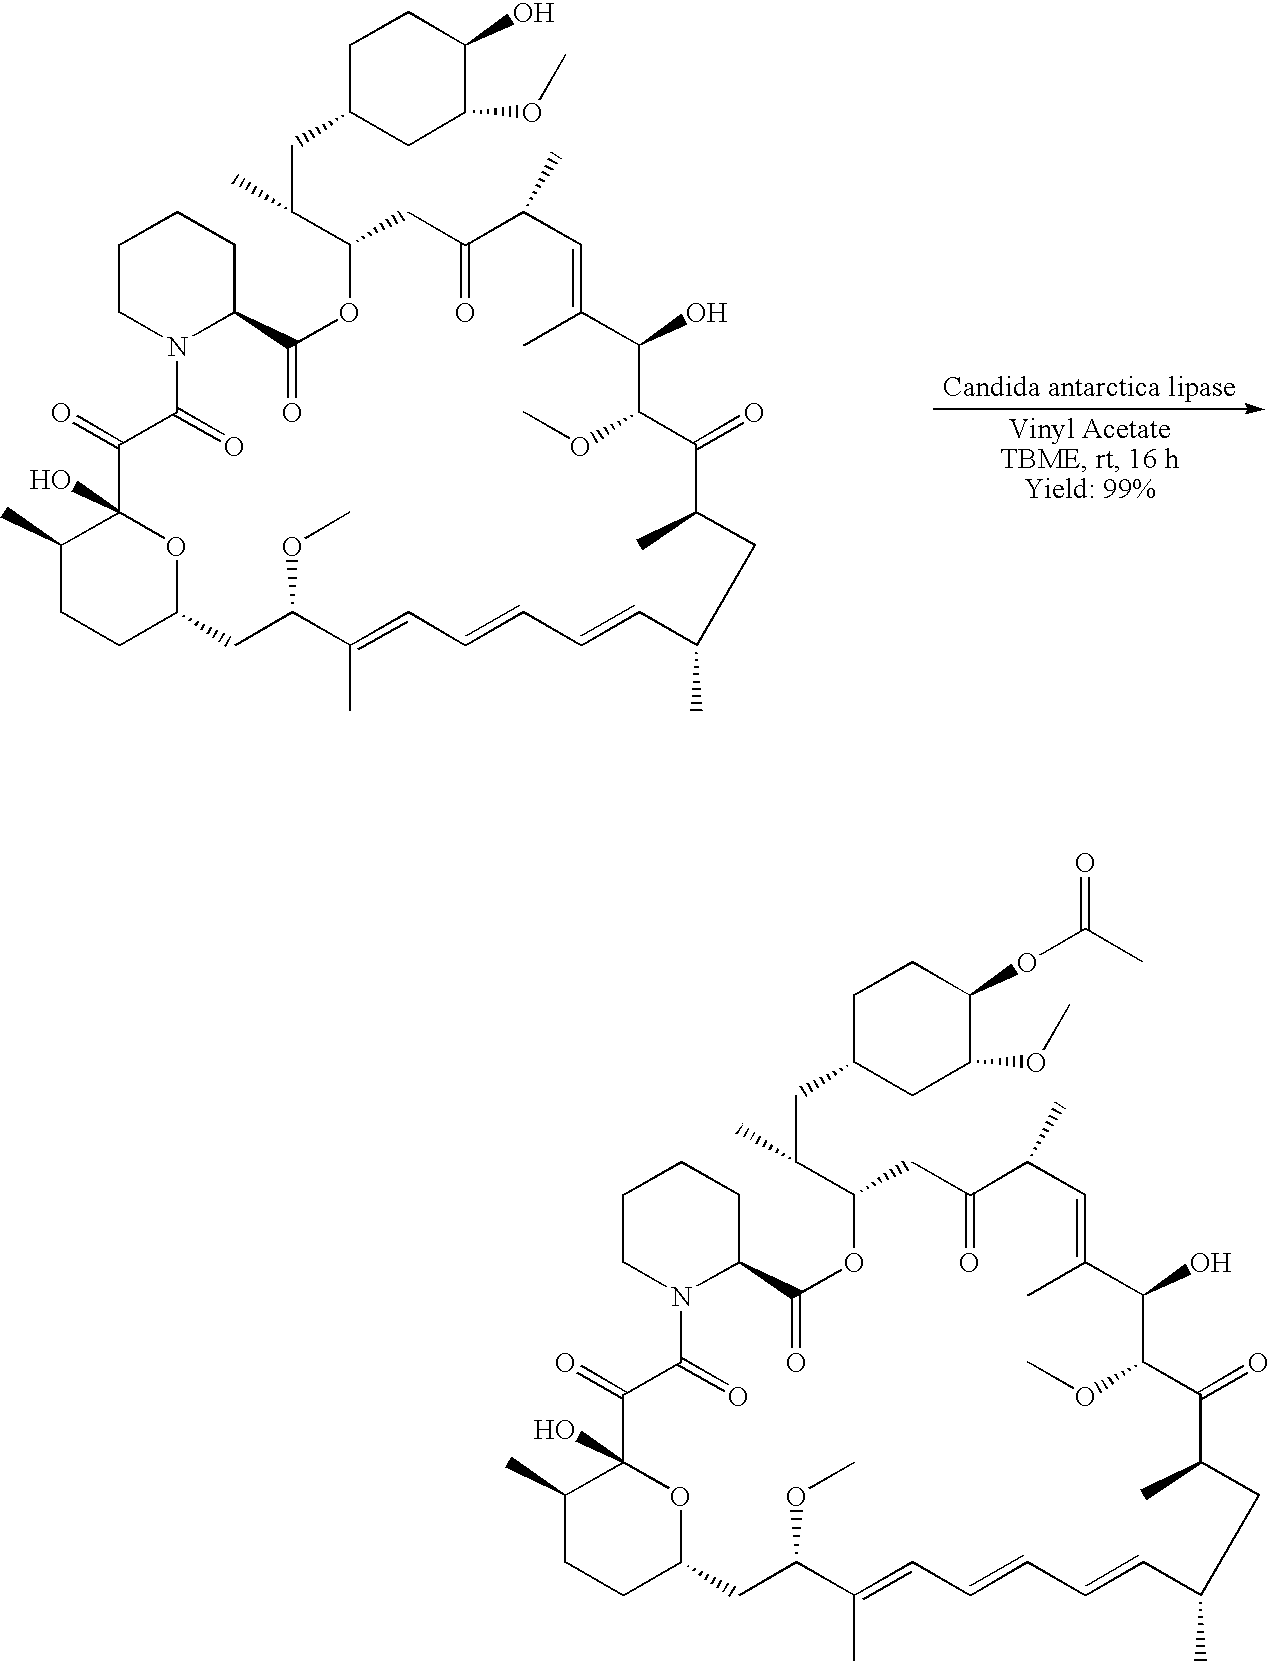 Regiospecific synthesis of rapamycin 42-ester derivatives